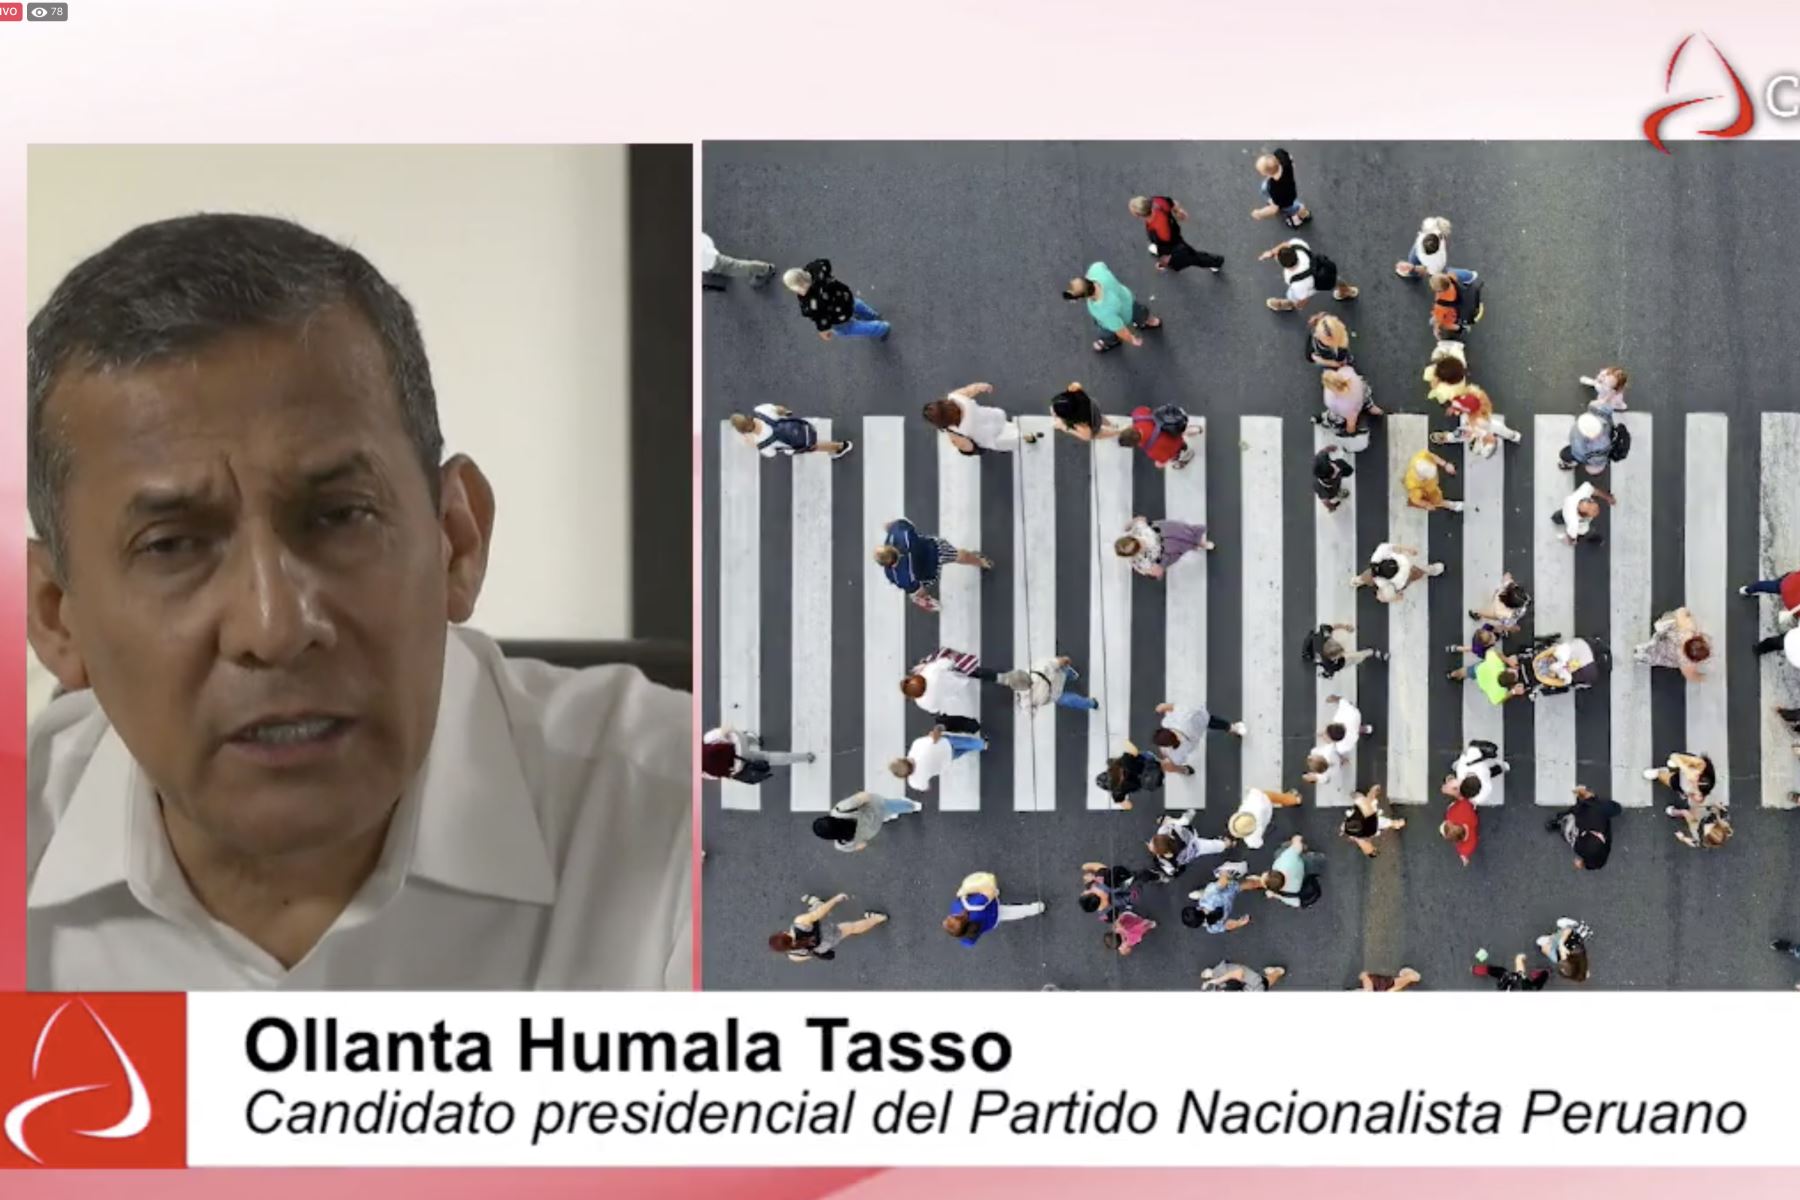 Ollanta Humala concedió una entrevista al programa 